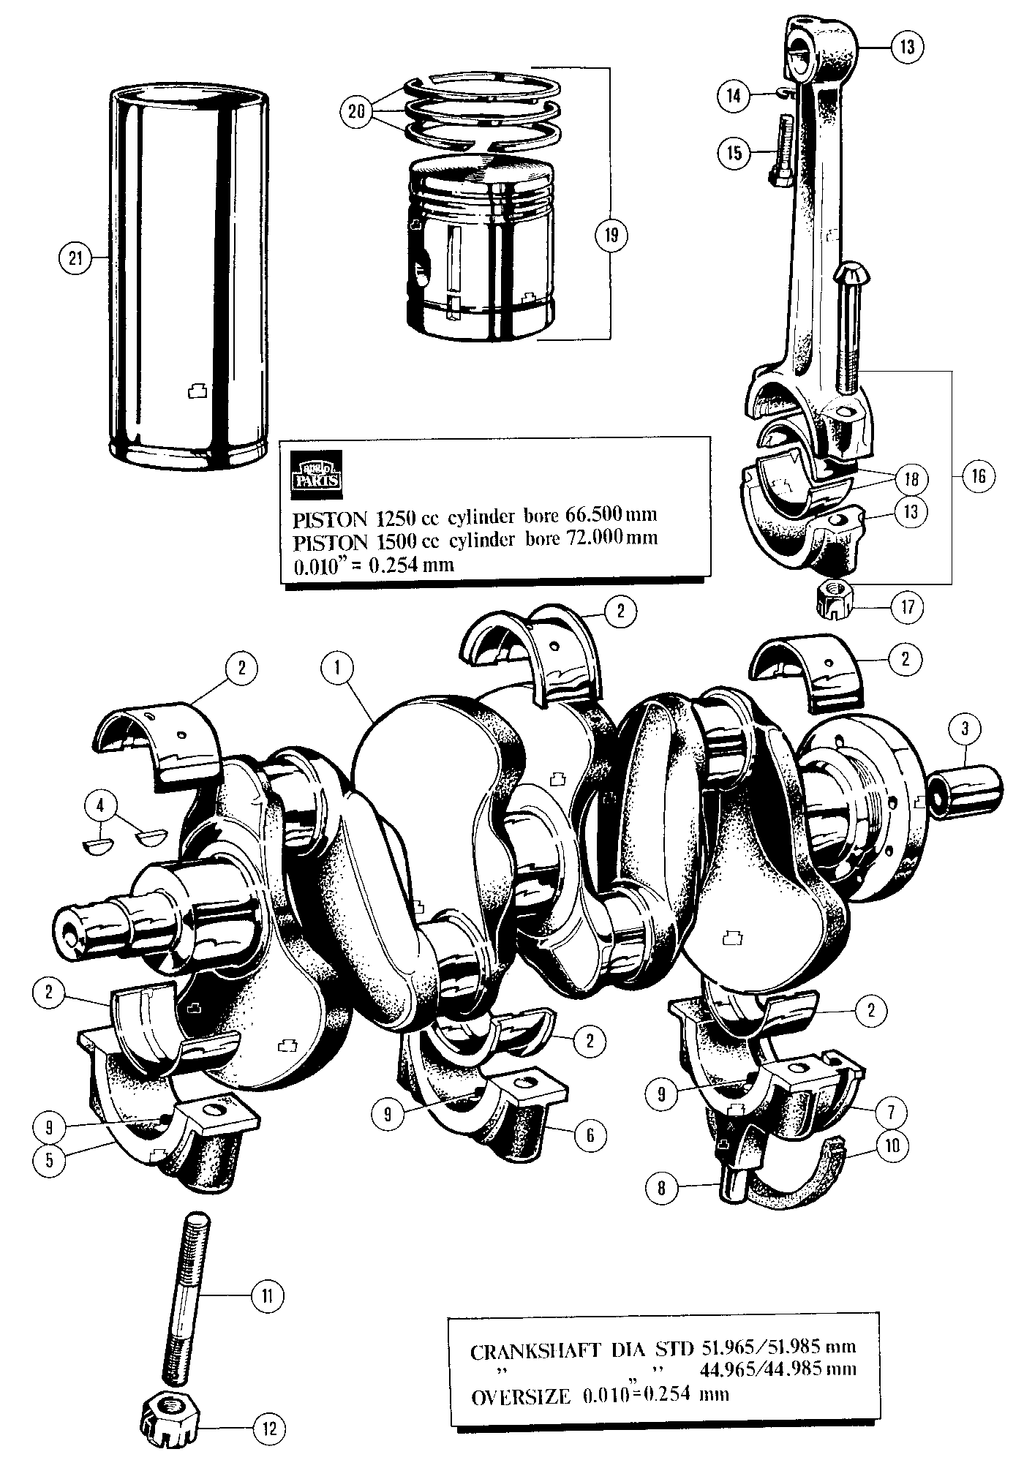 MGTD-TF 1949-1955 - Piston, rods & parts - Crankshaft & pistons - 1